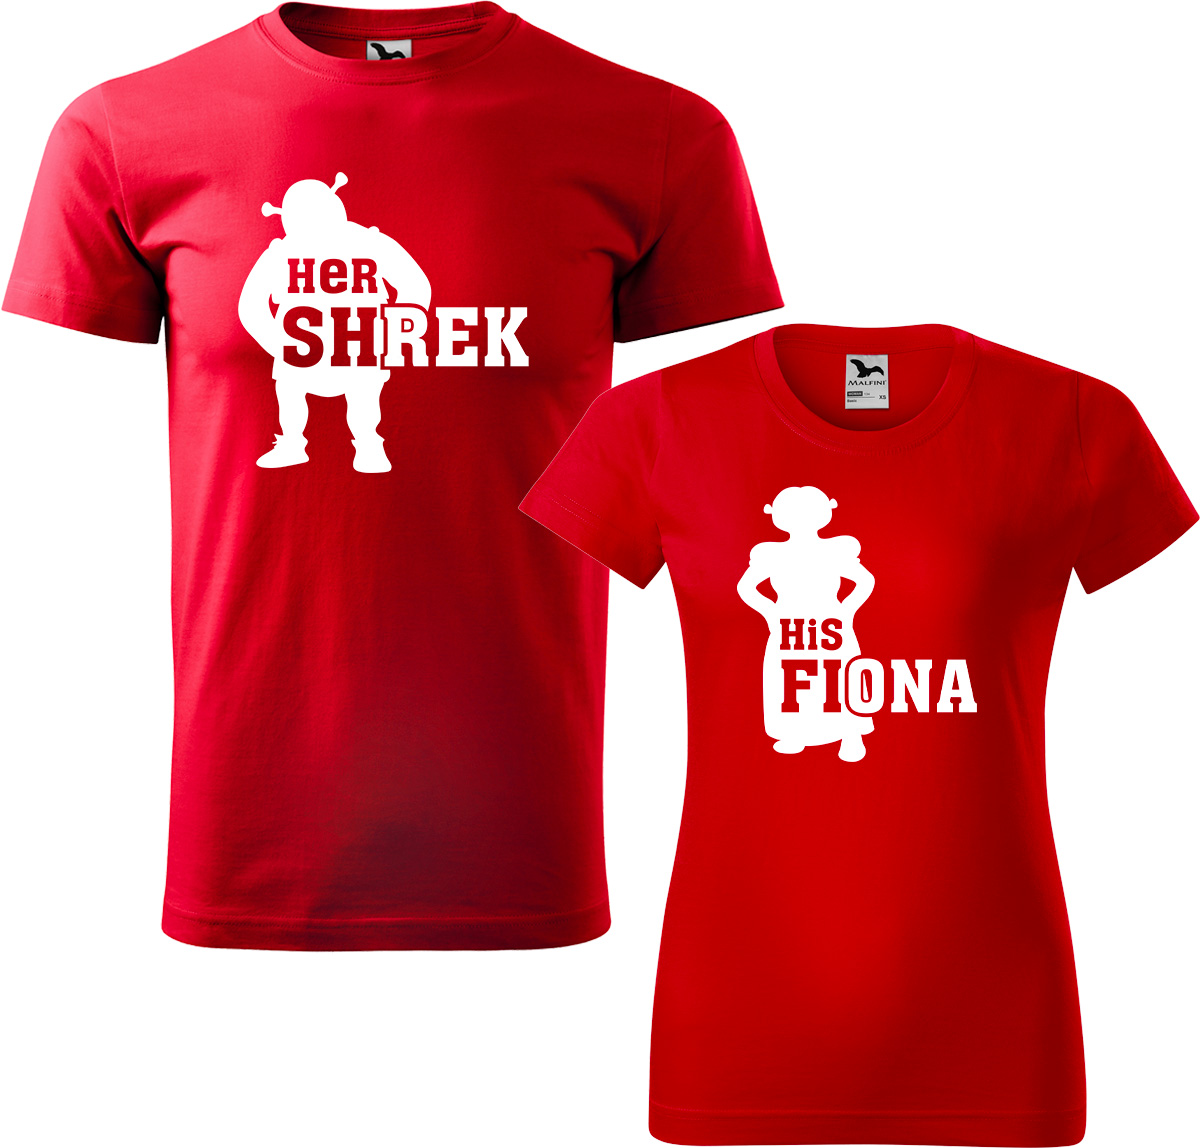 Trička pro páry - Shrek a Fiona Barva: Červená (07), Velikost dámské tričko: L, Velikost pánské tričko: S